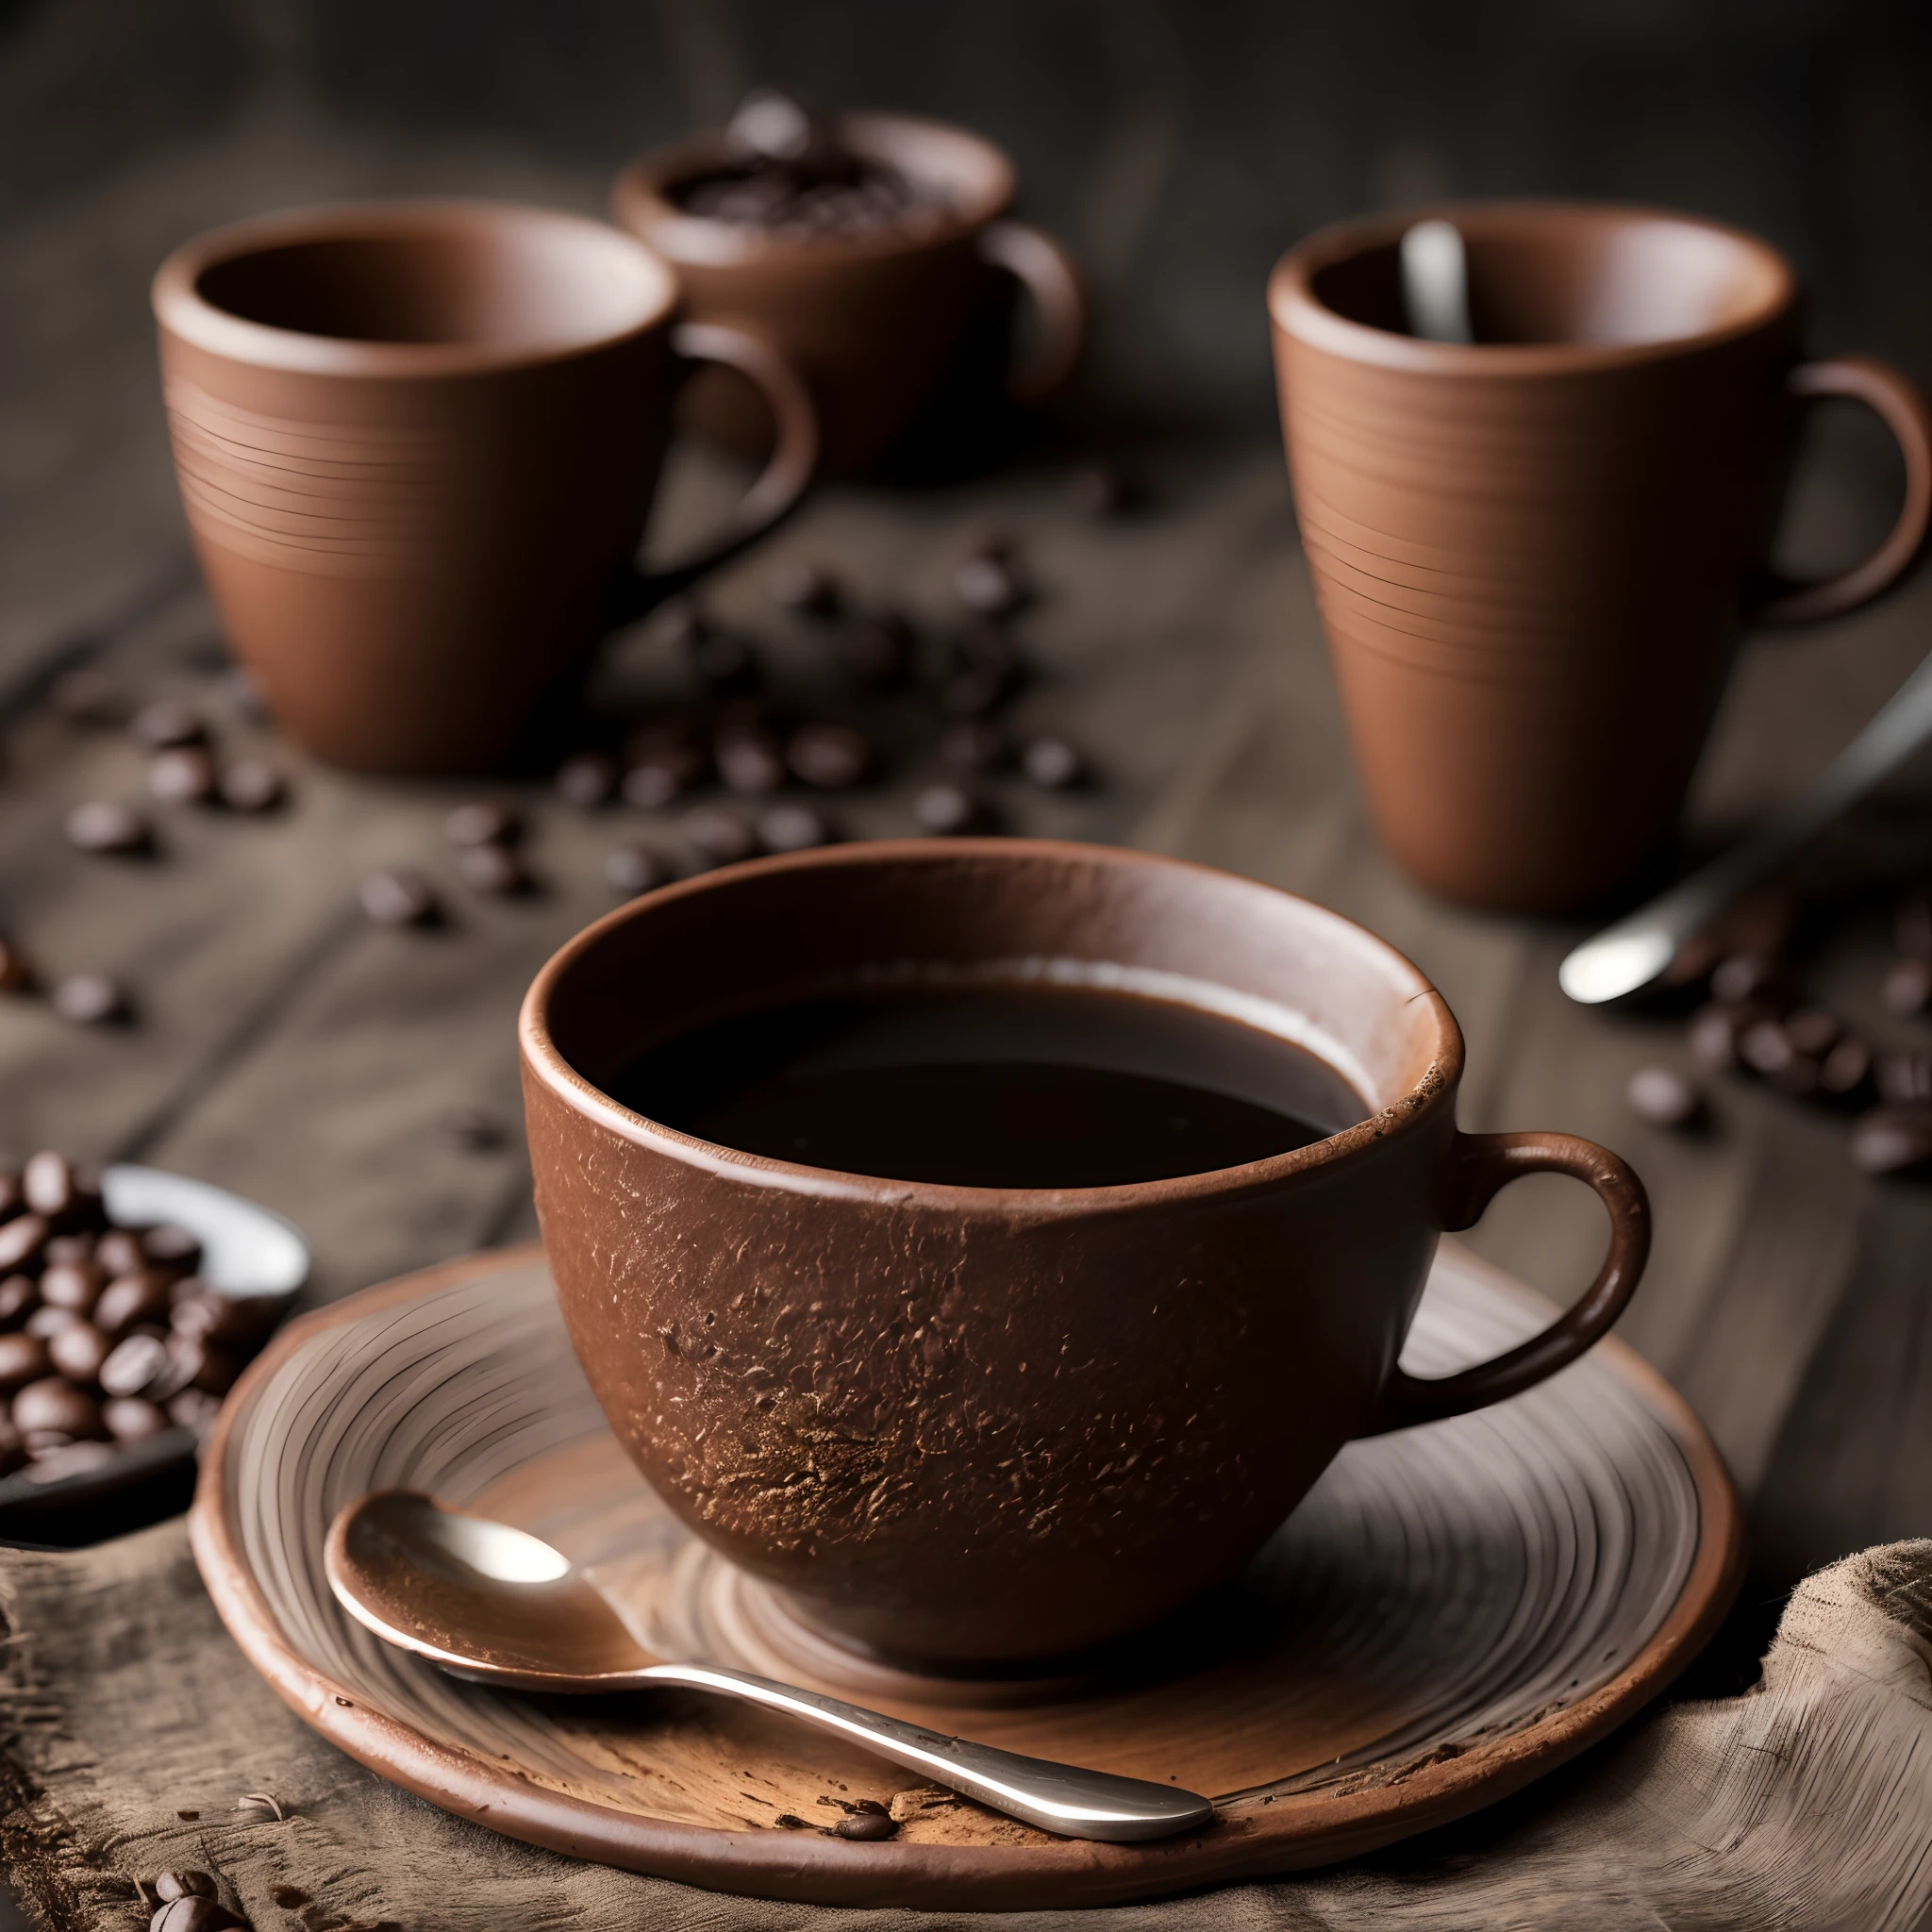 café torrado e grãos espalhados sobre um pano com uma xícara de café de barro, fumaça fina, fotografado com uma câmera macro ultra-realista HDR de 35 mm